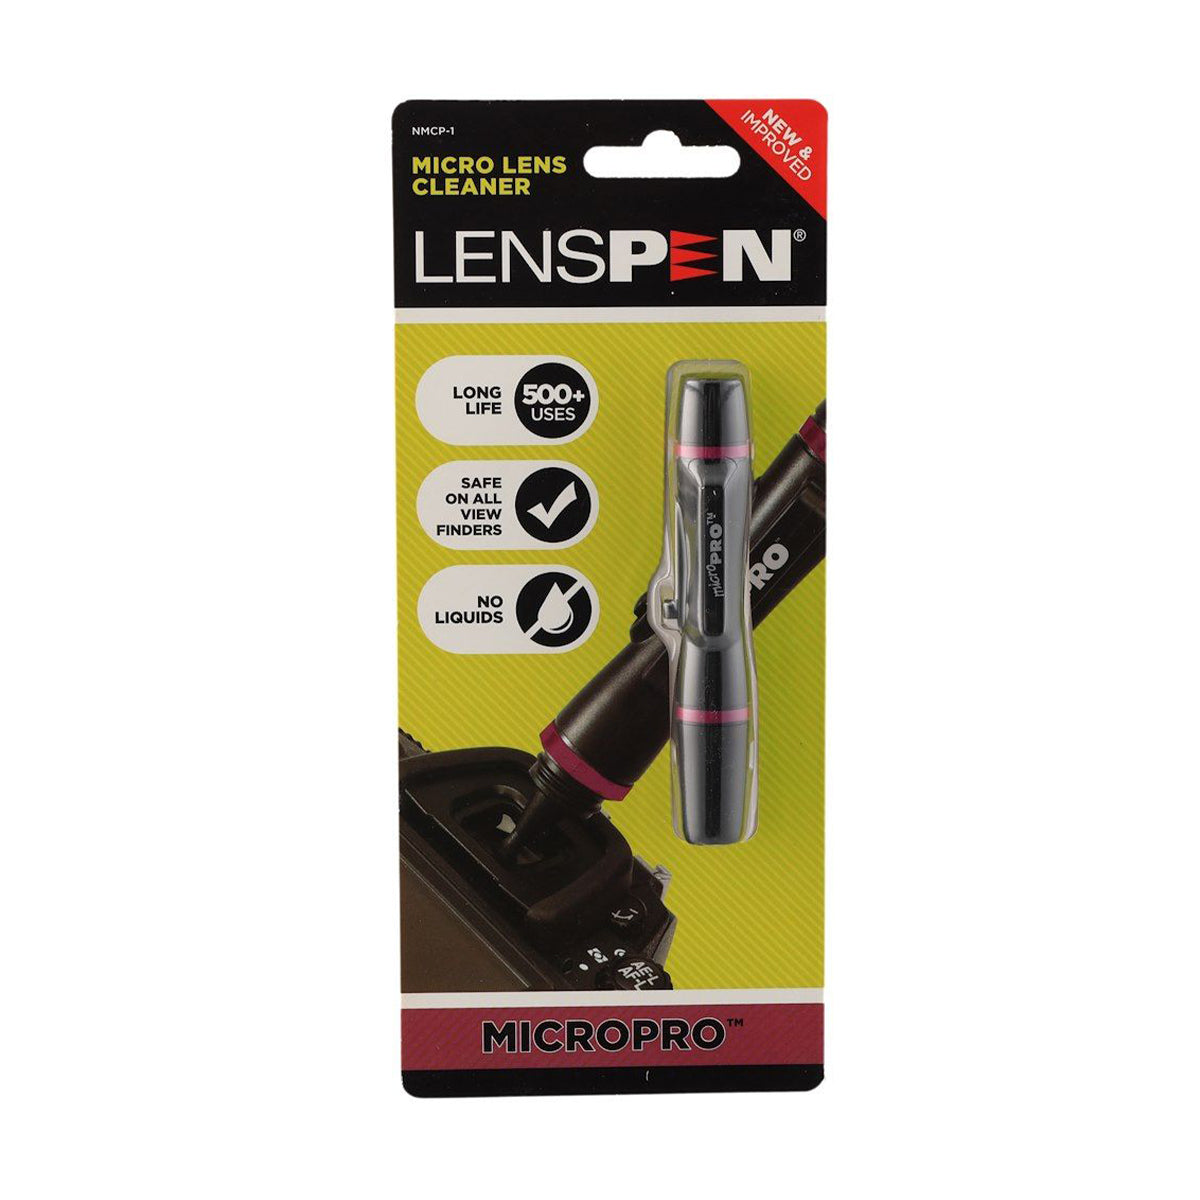 LensPen MicroPRO